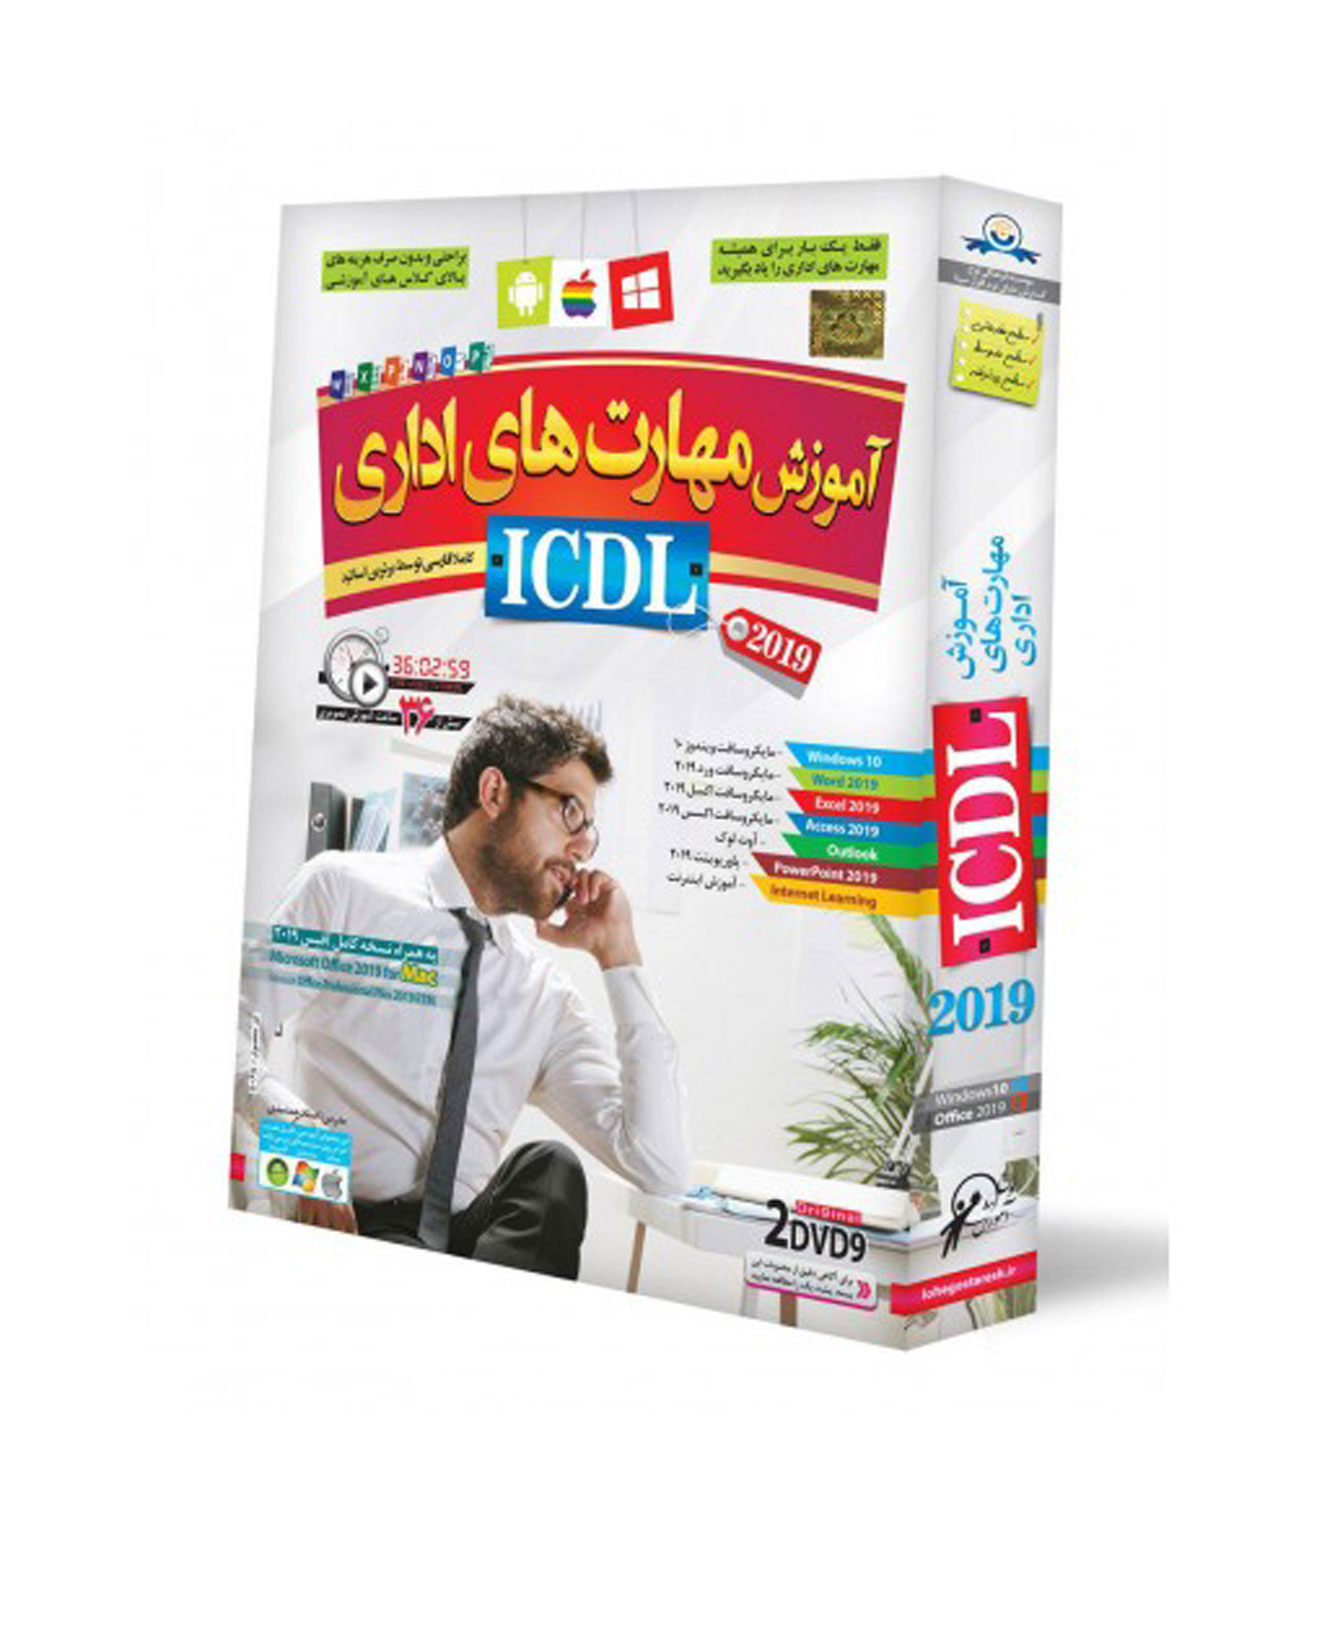 آموزش مهارتهای اداری ICDL 2019 به زبان فارسی